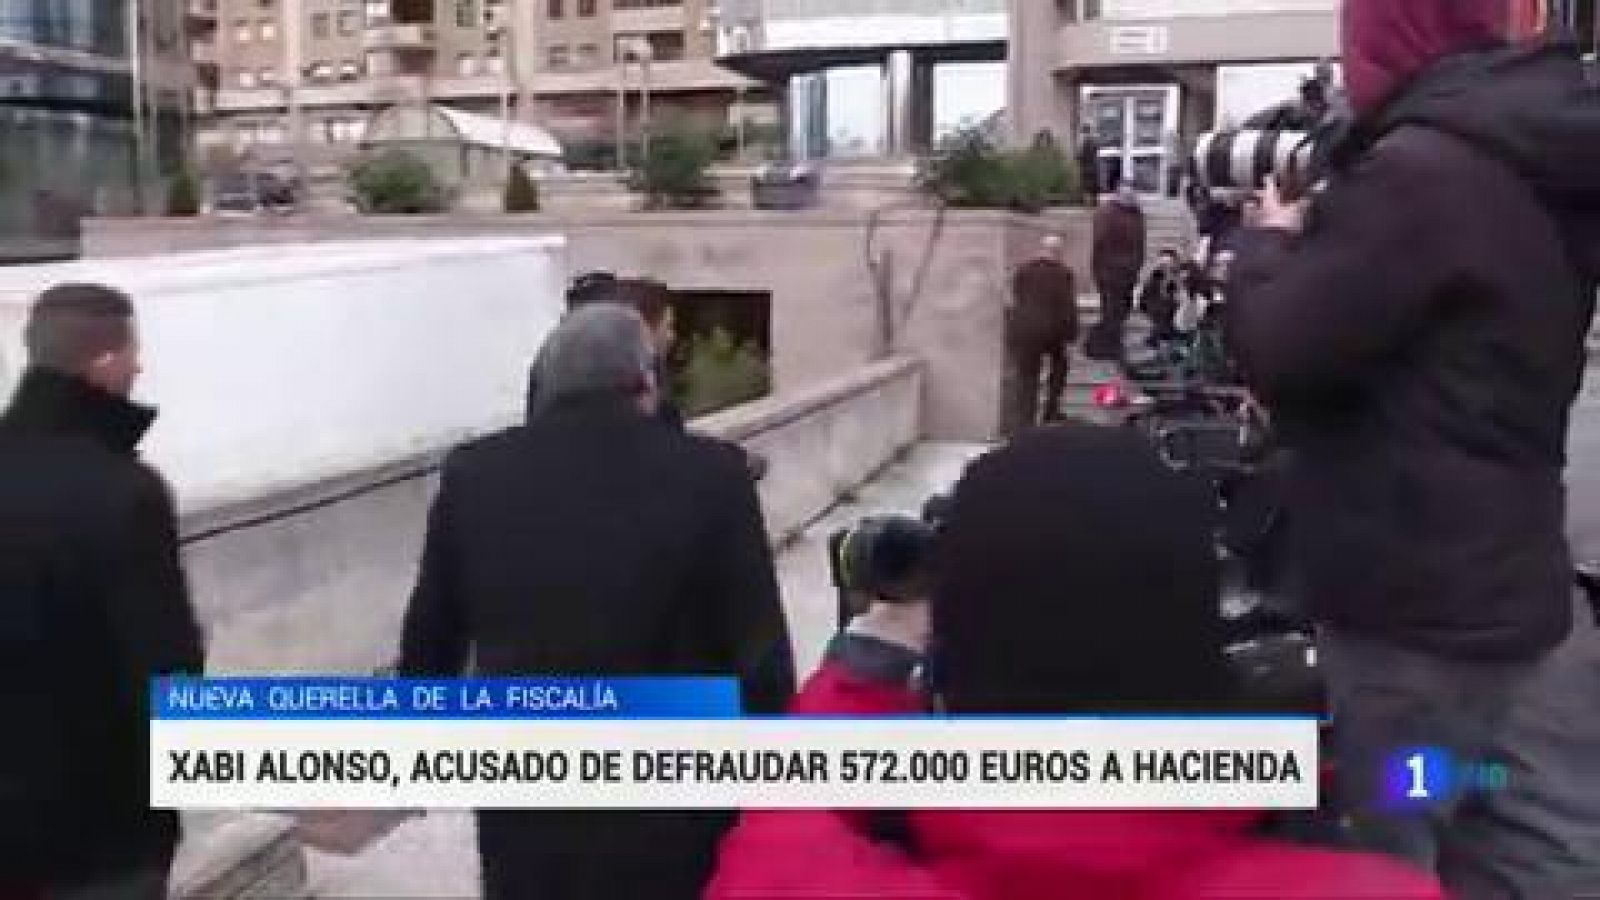 La Fiscalía ha presentado una segunda querella contra el exfutbolista del Real Madrid Xabi Alonso por la supuesta comisión de un delito fiscal durante el ejercicio 2013 al defraudar presuntamente a Hacienda 572.008 euros.